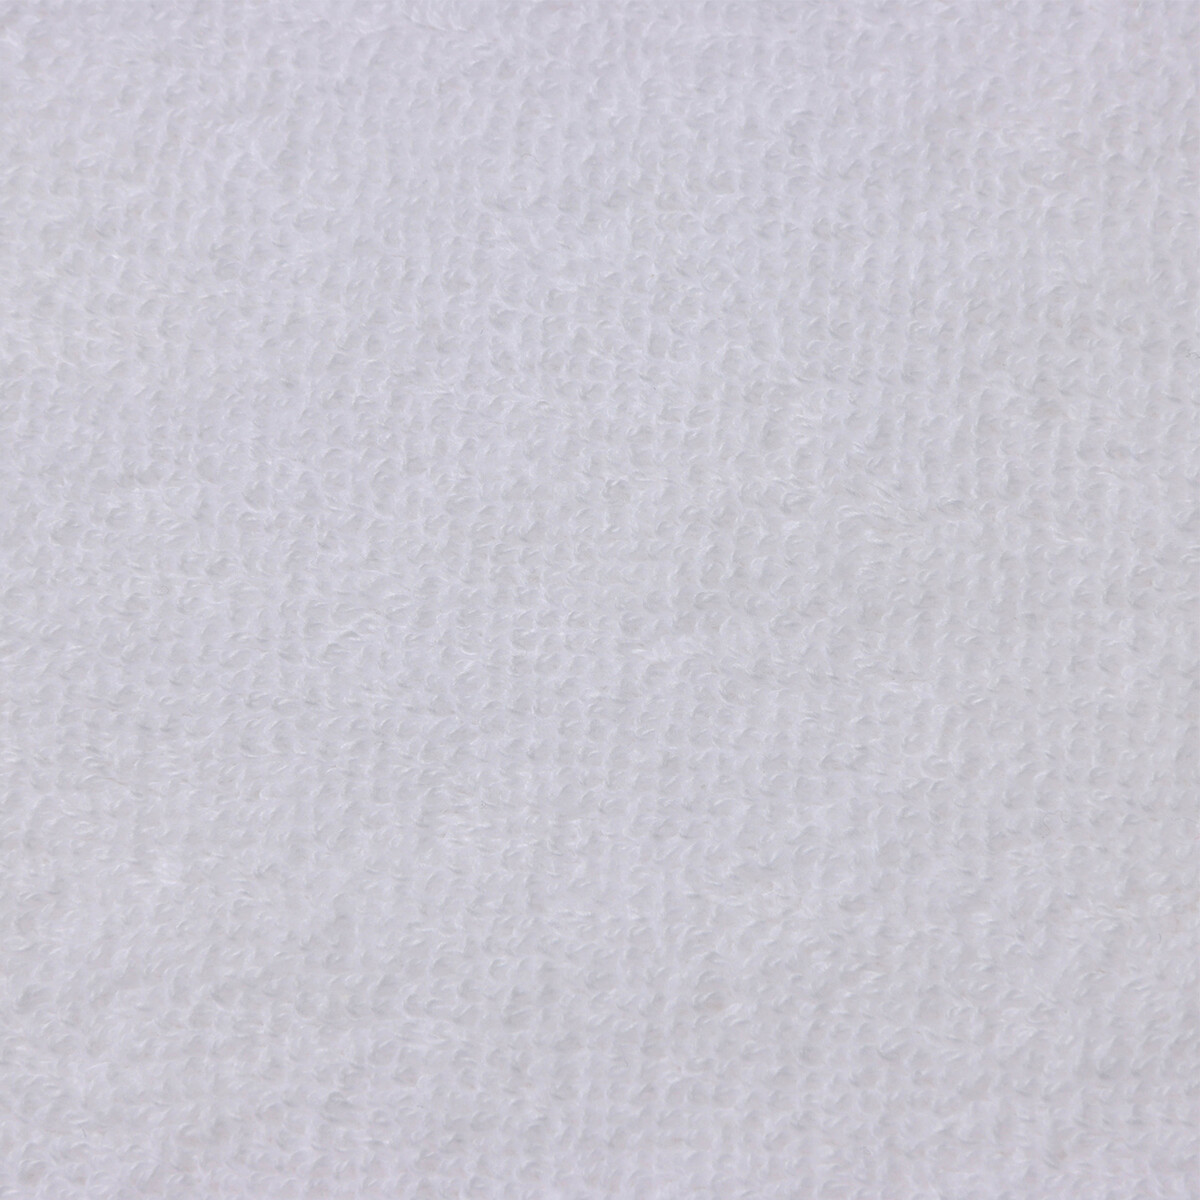 Коврик махровый этель classic, цв. белый, 50х70 см, 100% хлопок, 730 г/м2 Этель 08045148 - фото 2